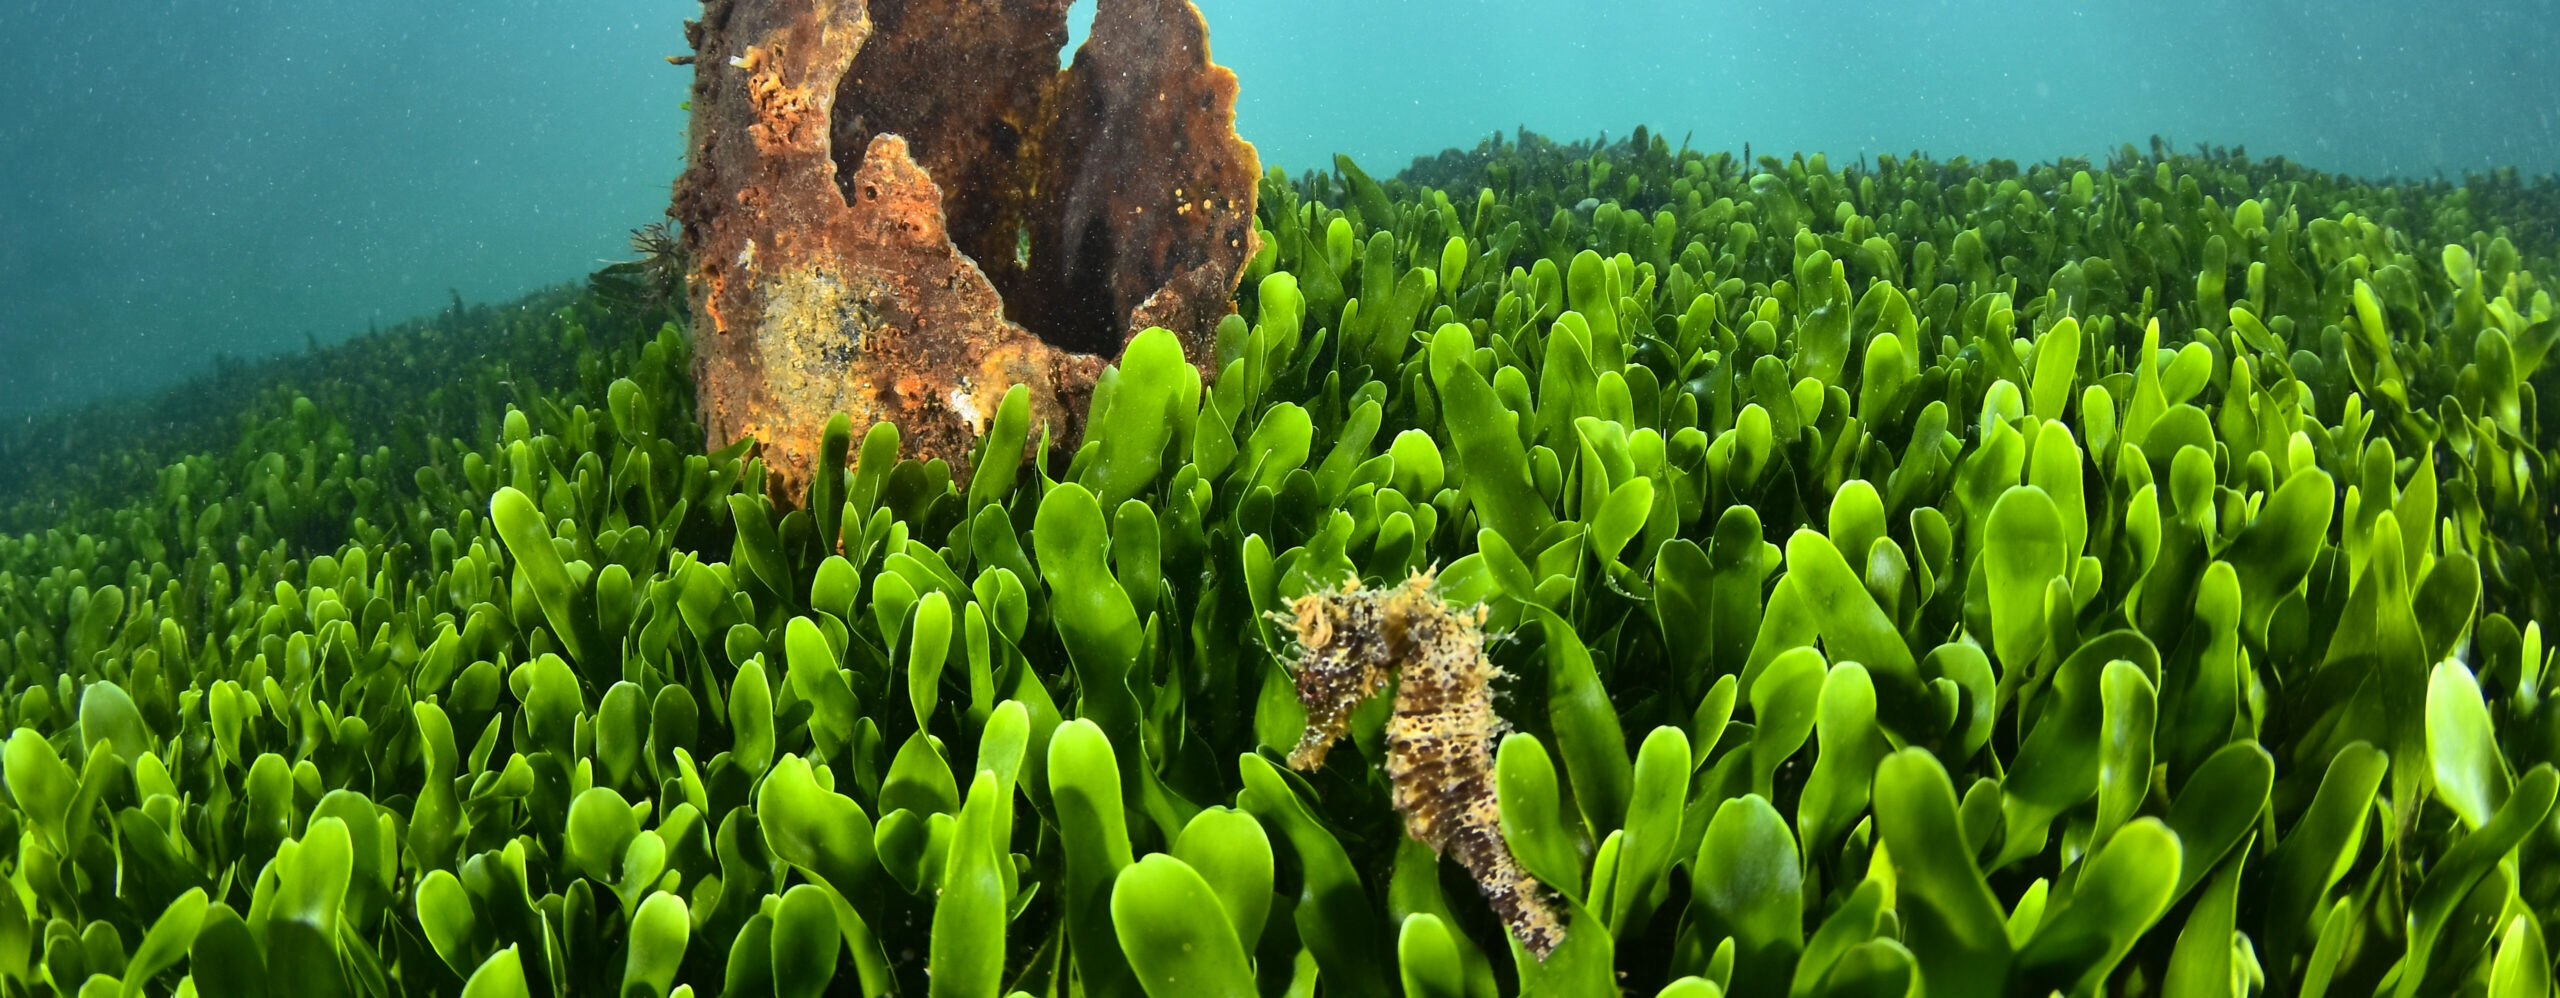 caballito de mar nadando entre algas